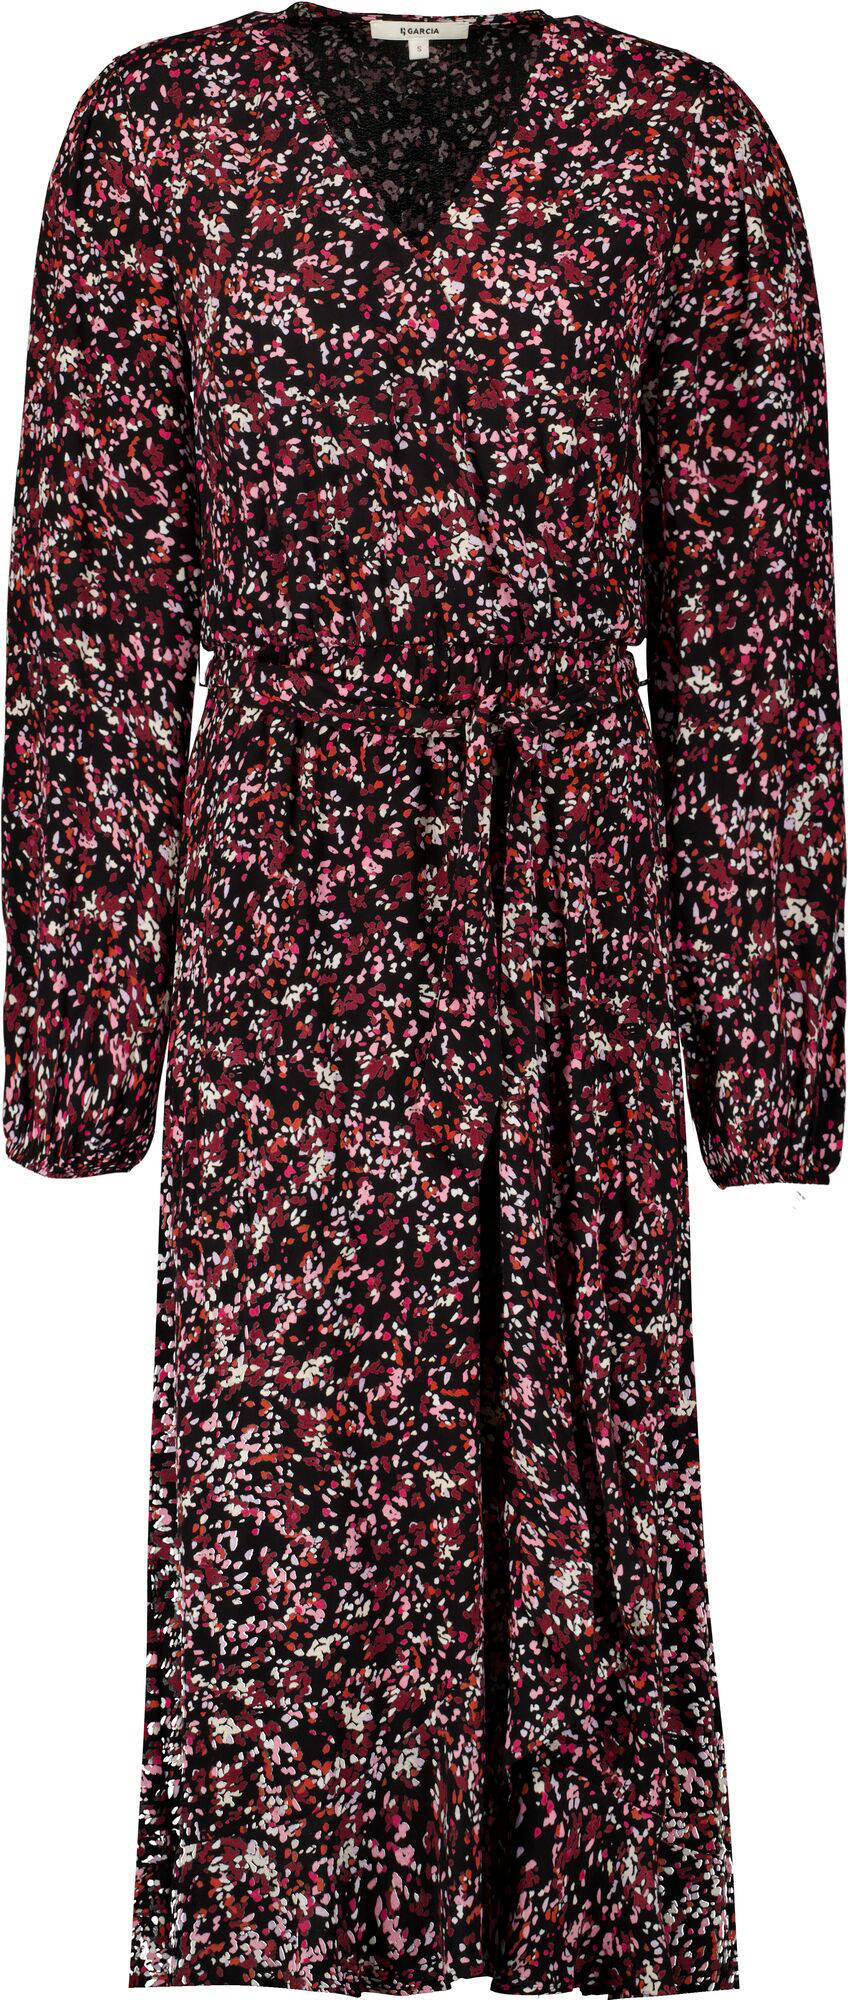 Garcia jurk met all over print en ceintuur donkerrood/roze/ecru online kopen